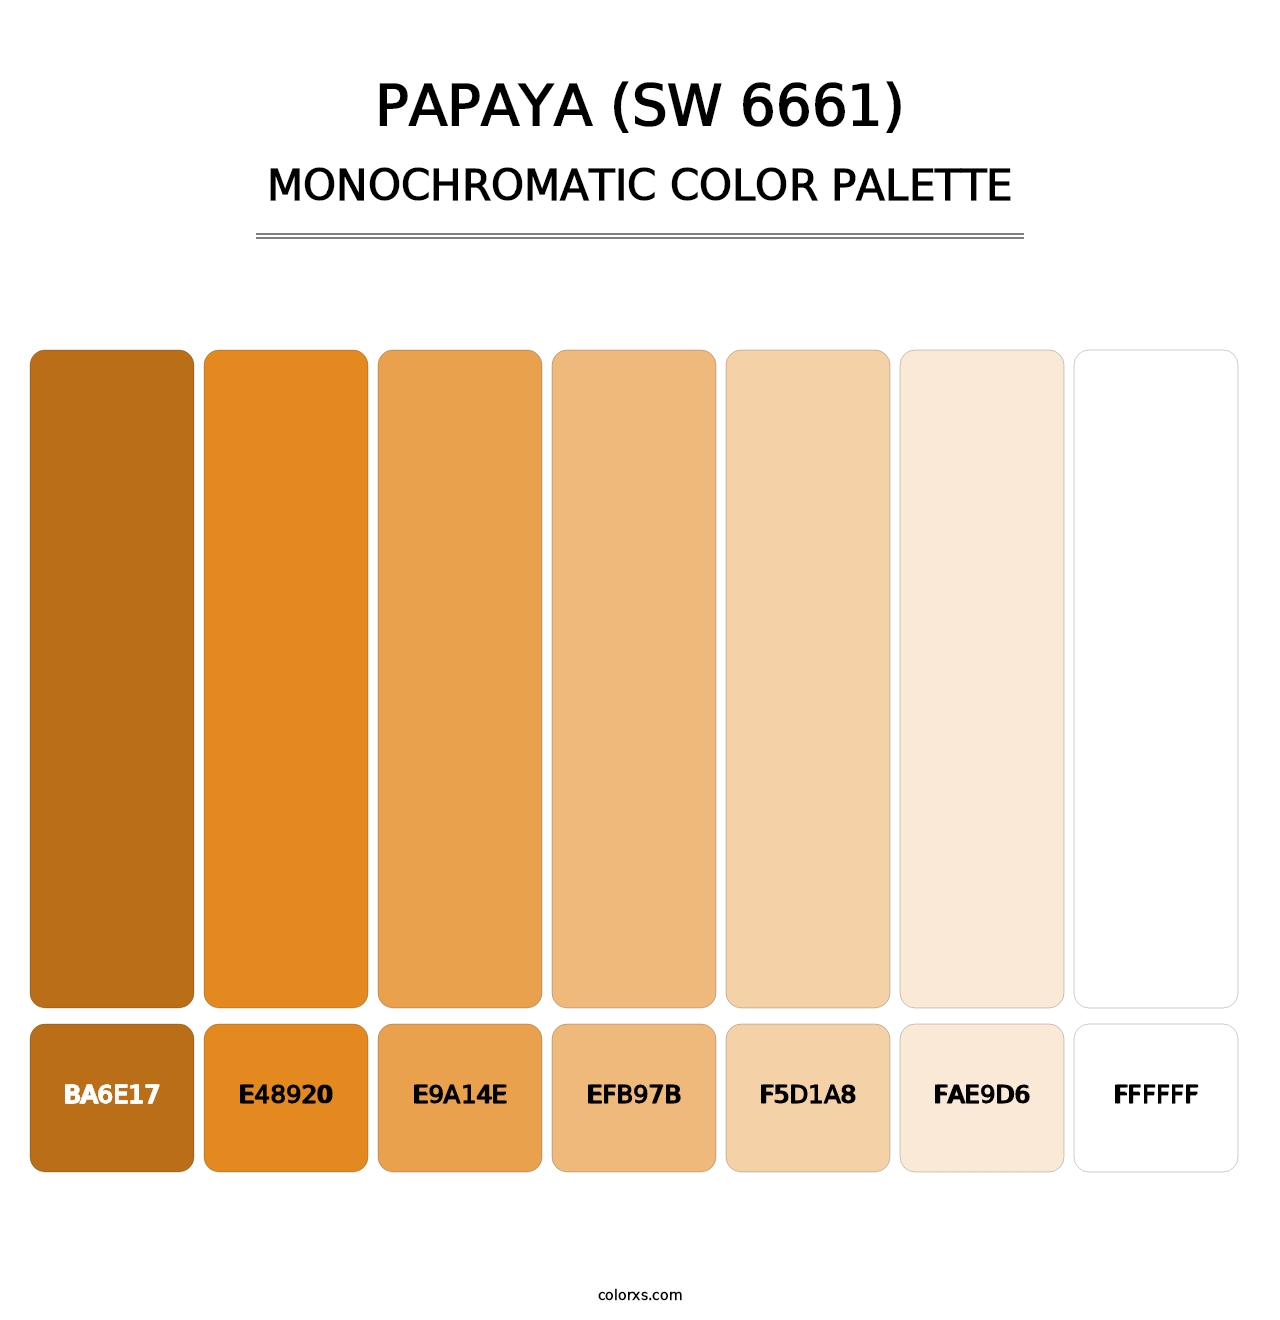 Papaya (SW 6661) - Monochromatic Color Palette